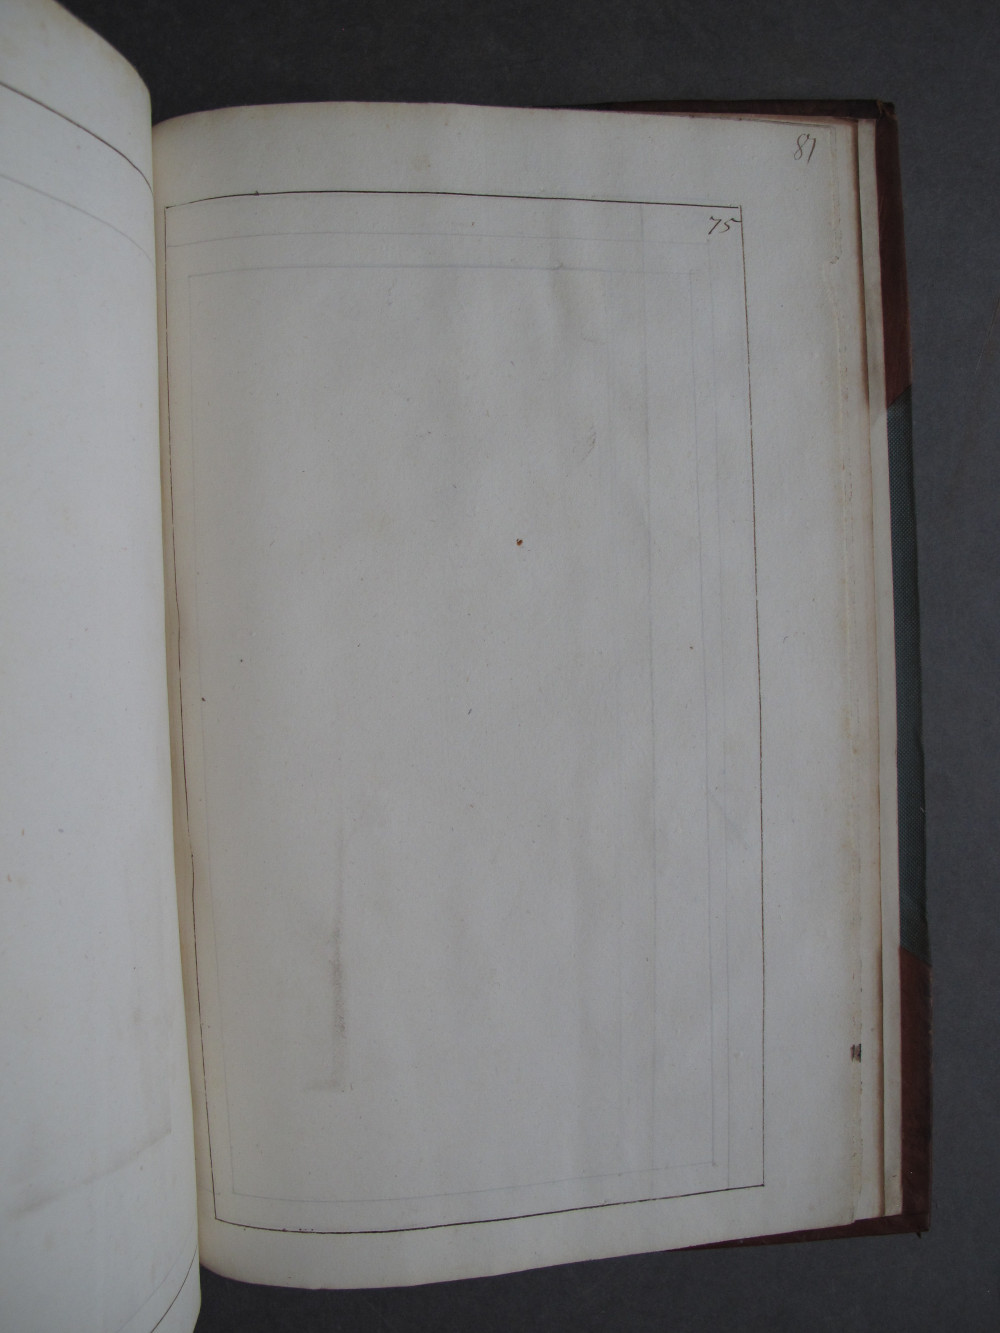 Folio 75 recto